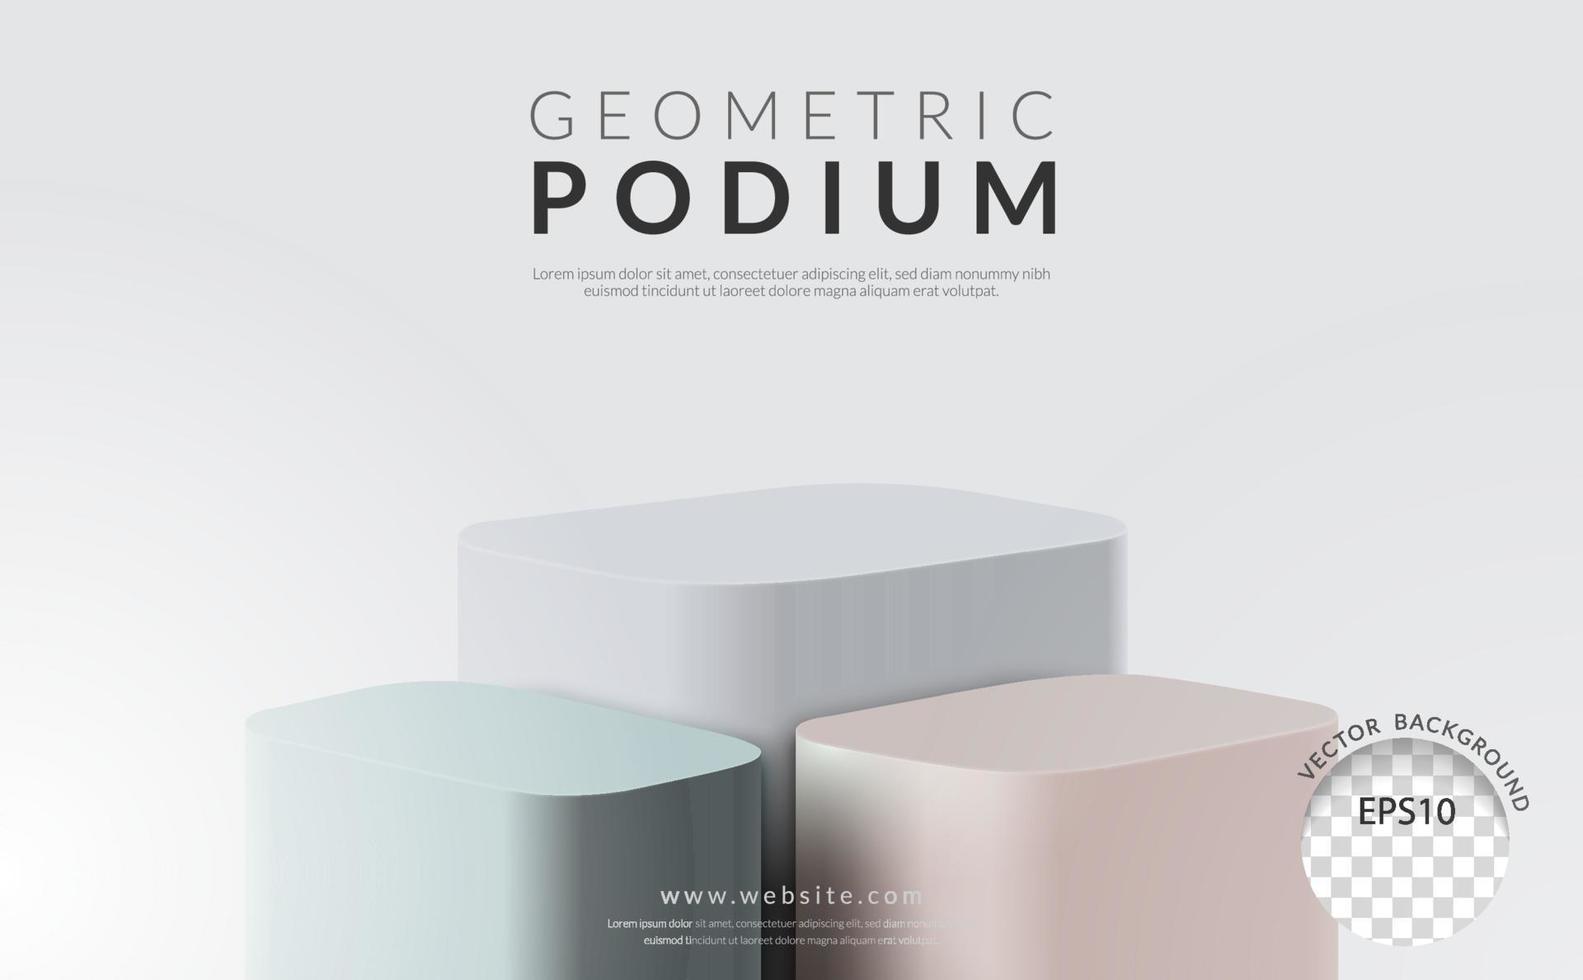 concept d'affichage de produit géométrique, podium rectangle en trois étapes sur fond blanc, illustration vectorielle vecteur